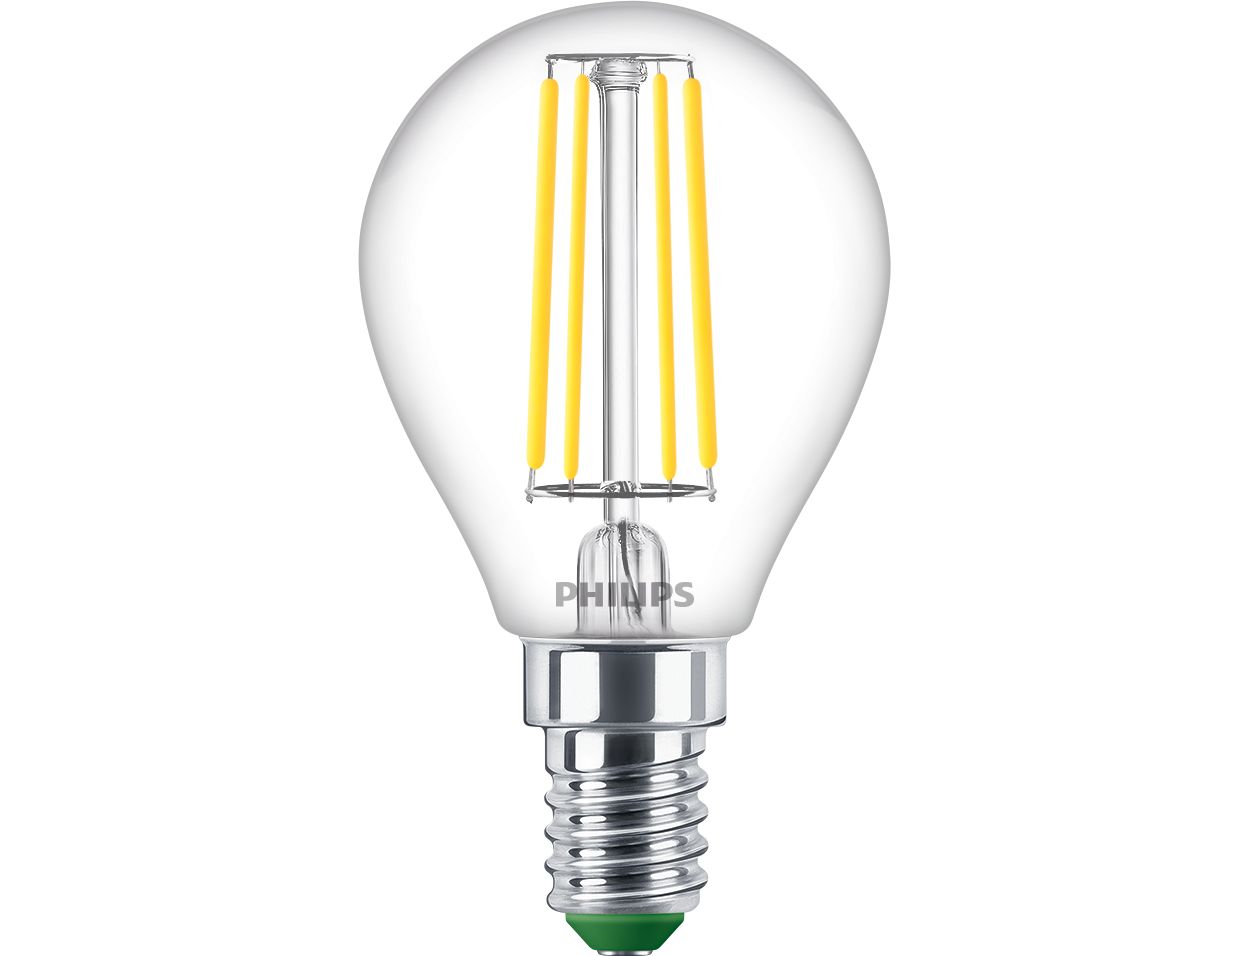 De UltraEfficient lamp is onze meest efficiënte LED-lamp tot nu toe